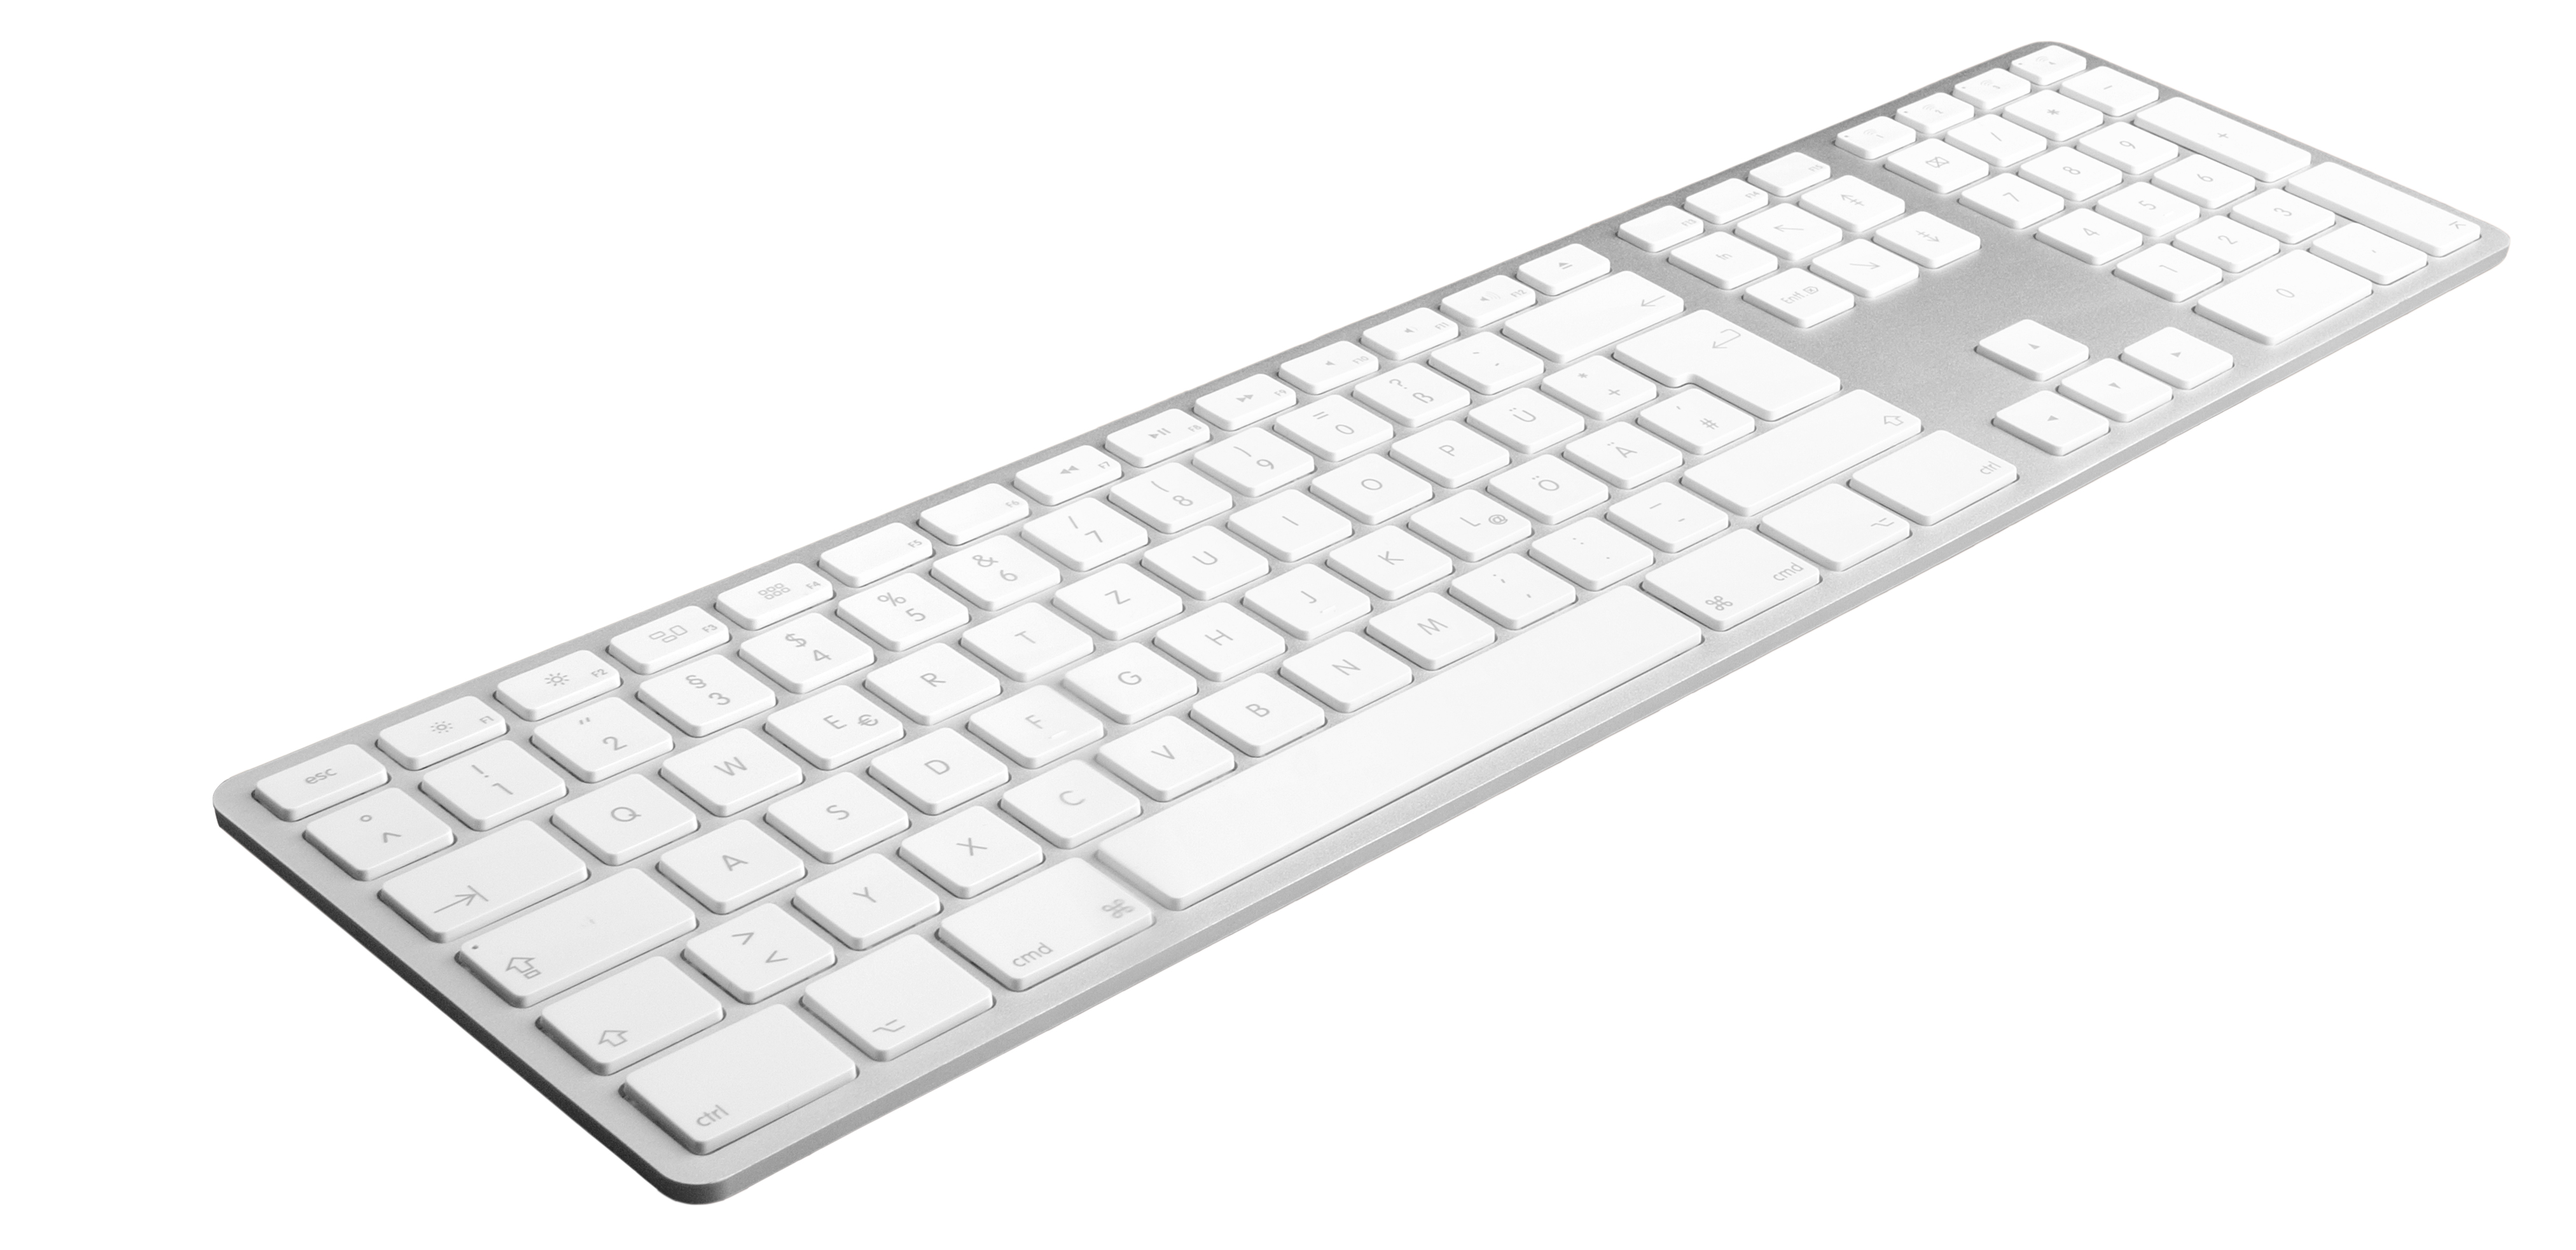 JENIMAGE Ergonomische Mac 1 Kabellos Lebensdauer, Win Batterie Jahr Tastatur Layout Tastatur für DE